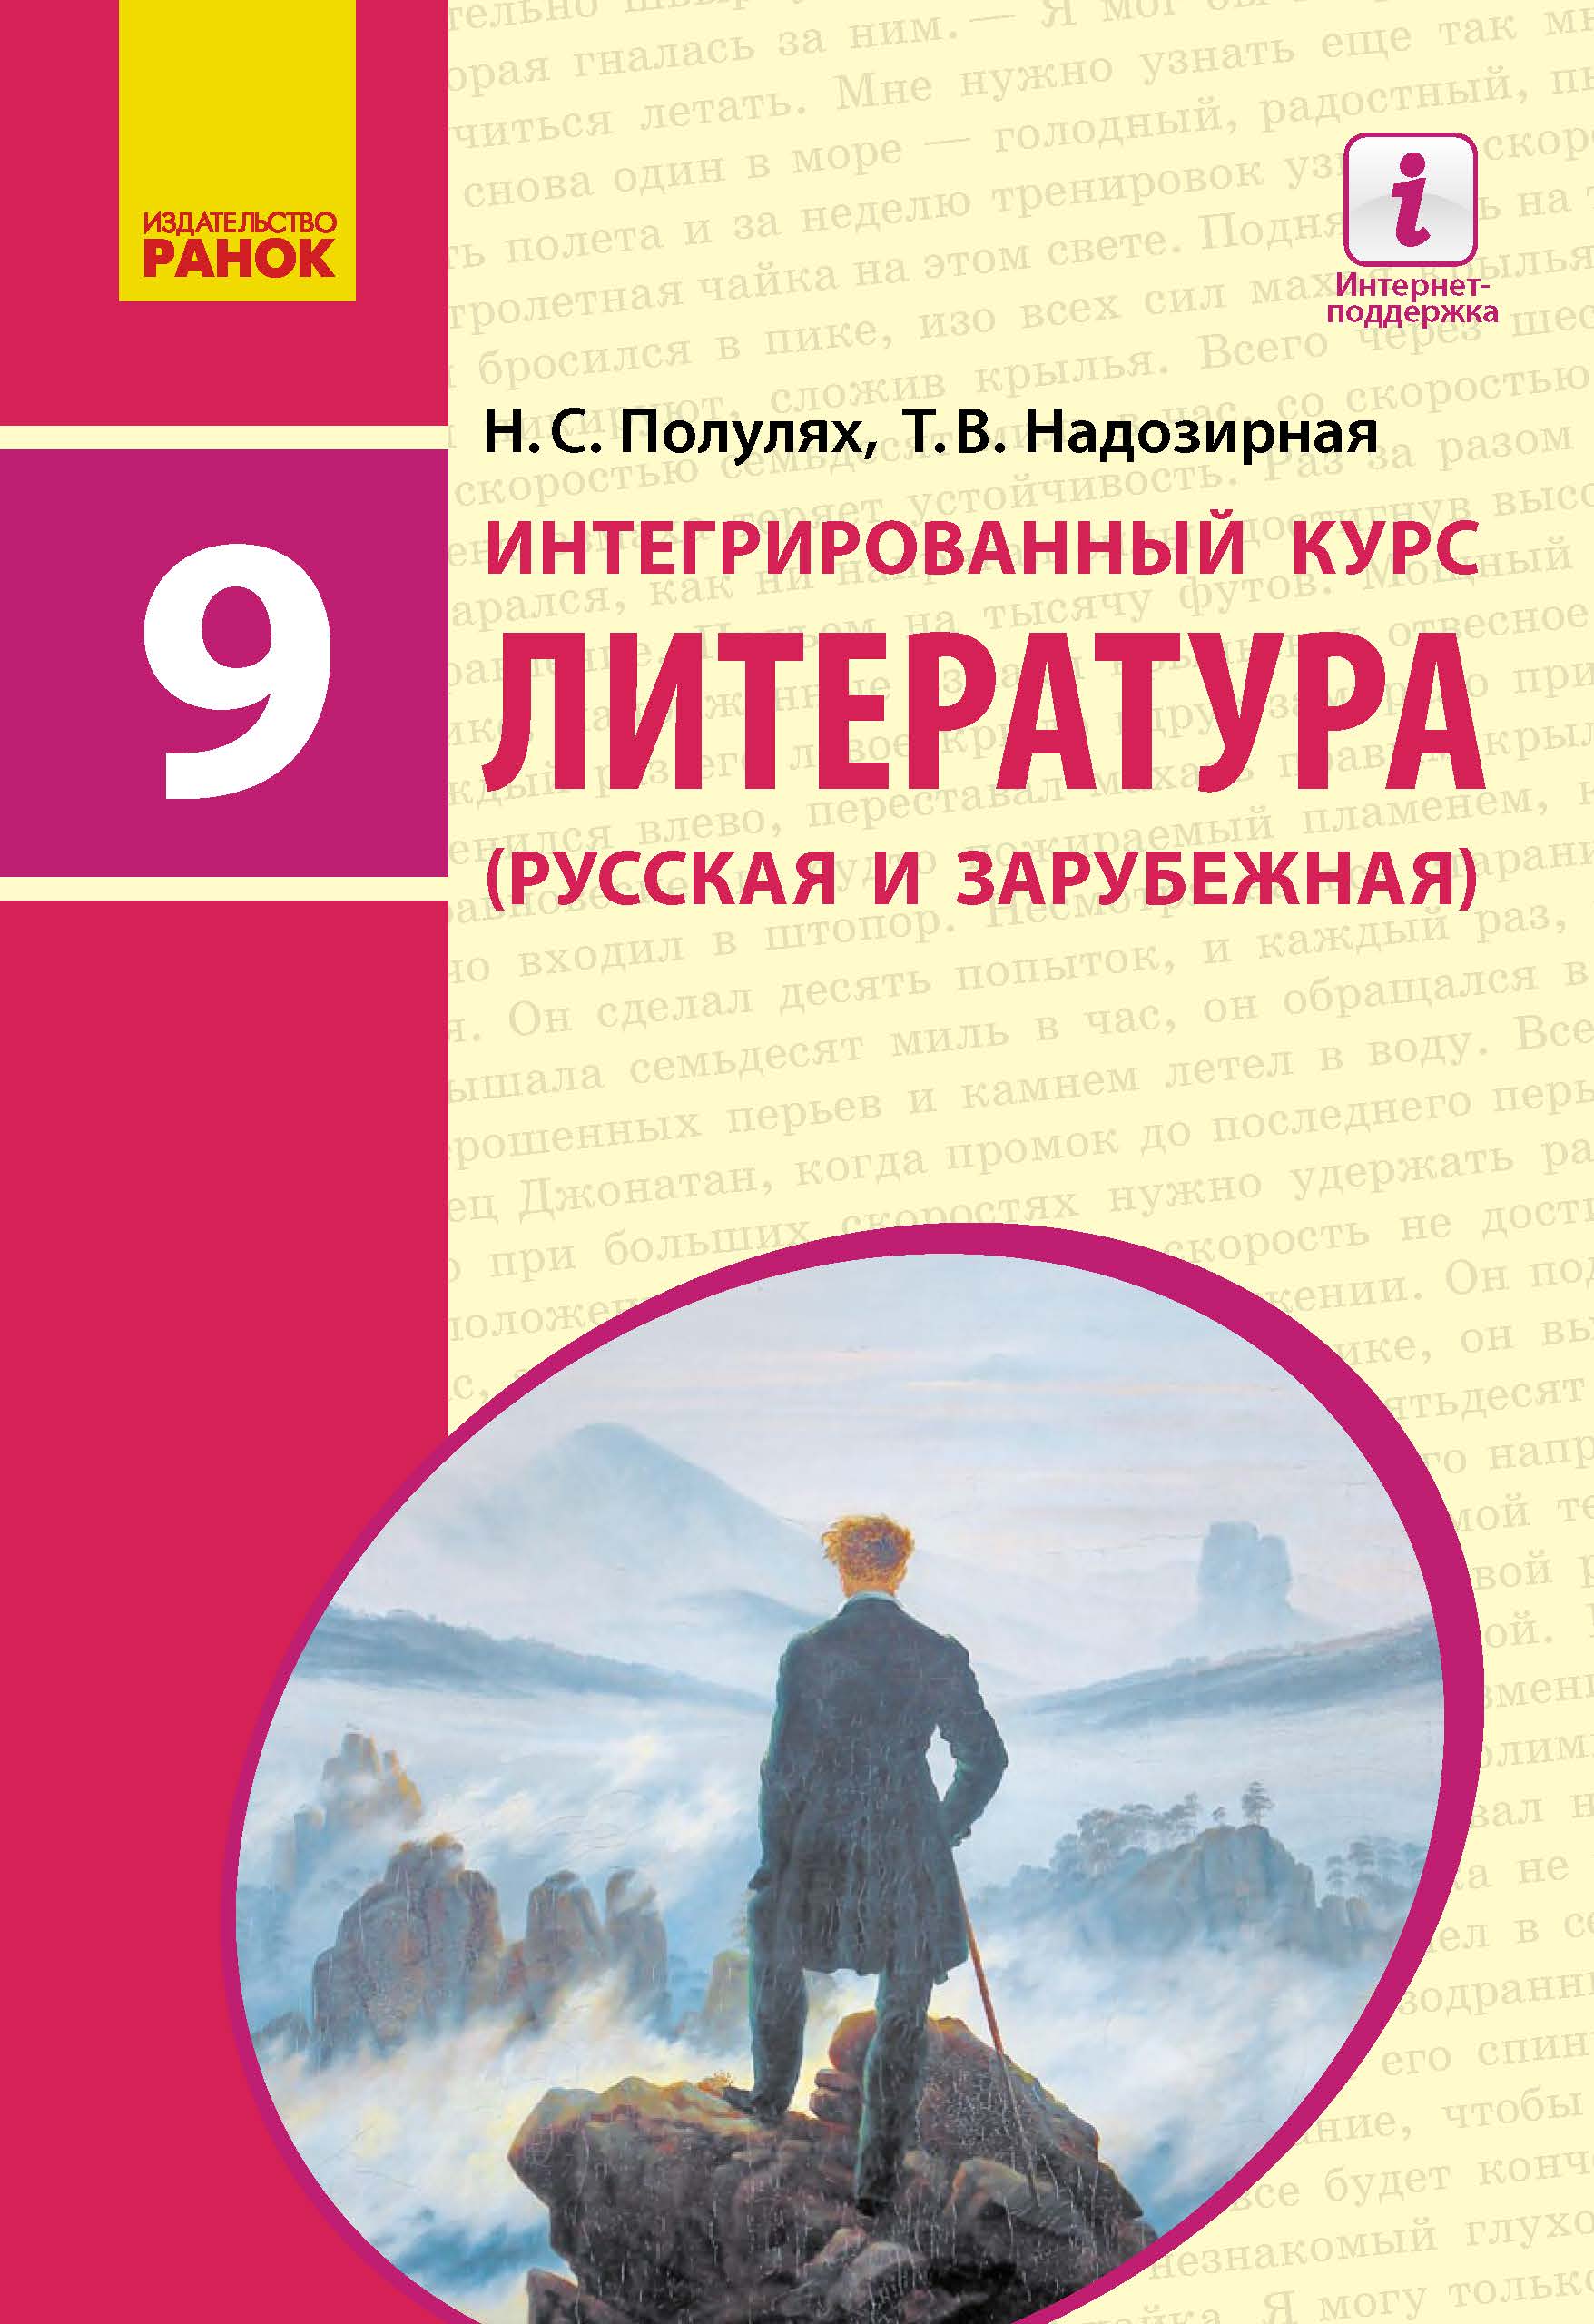 Скачать учебник русского языка по интегрированному обучению в 3 классе